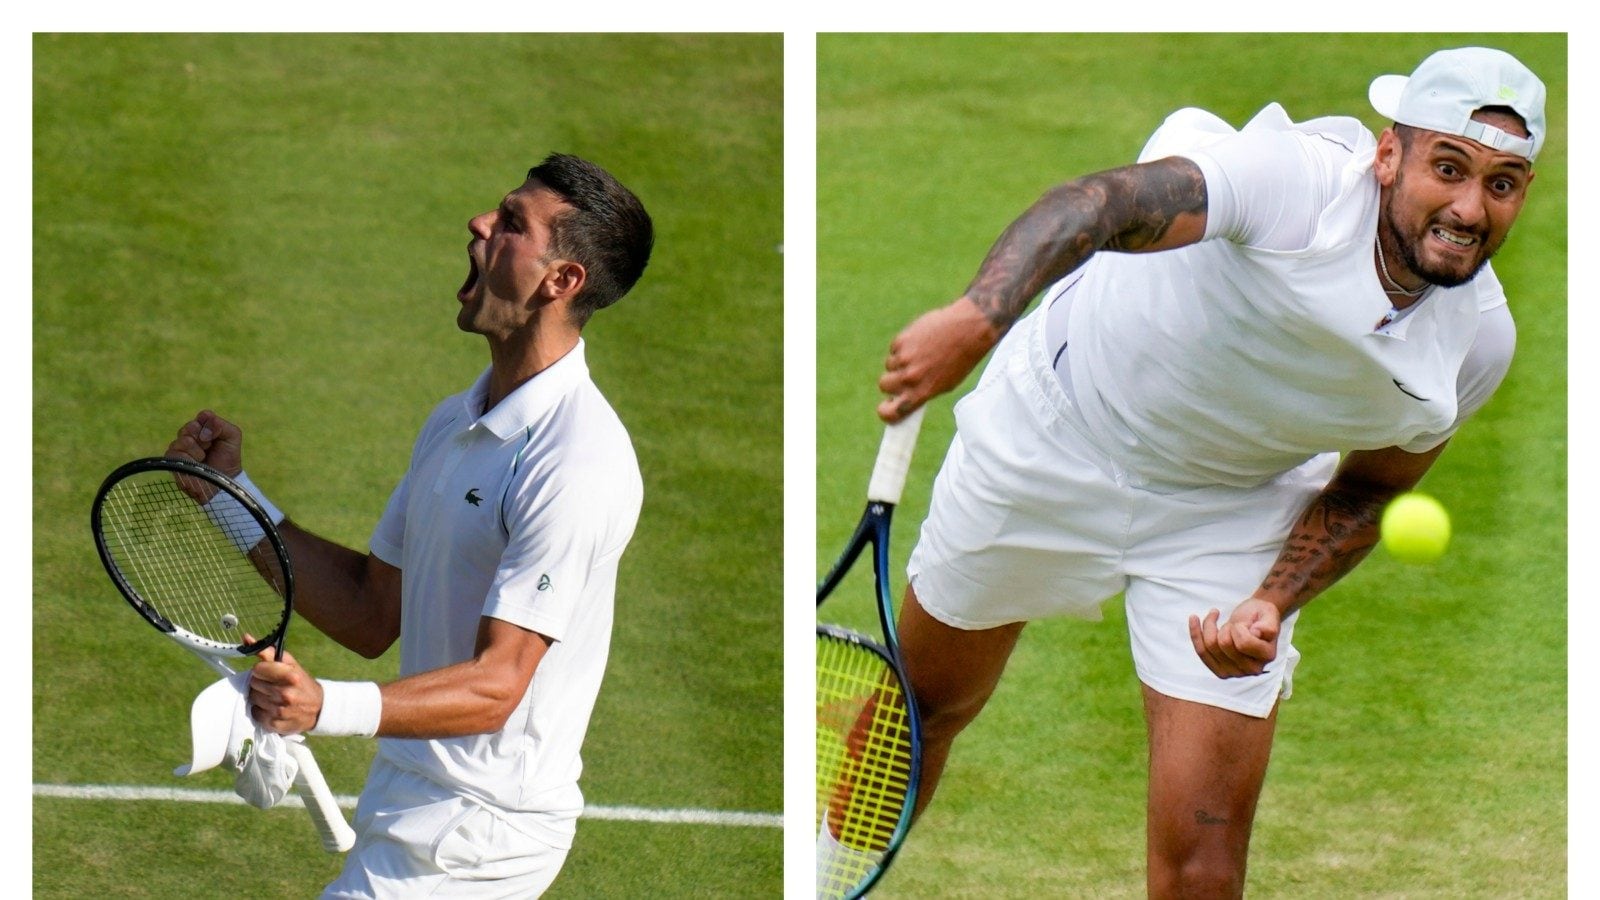 Wimbledon 2022 Novak Djokovic, Nick Kyrgios Set up Dinner Date After